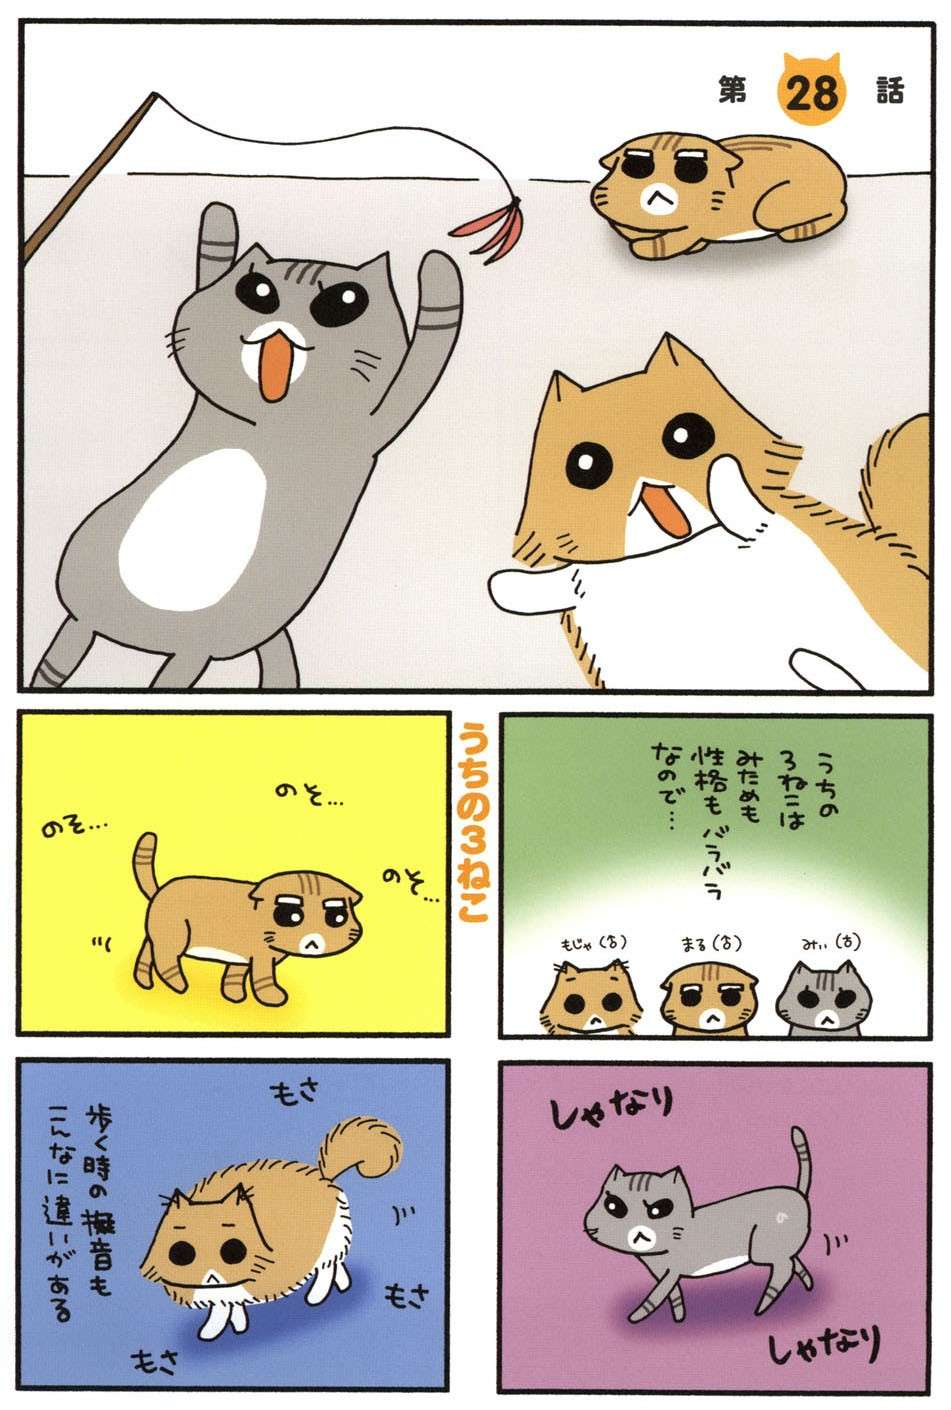 猫たちが大好きなねこじゃらし。みんな大喜びするかと思ったら、遊び方にも個性が!? ／うちの3ねこ 2 uchinosanneko_002_025.jpg